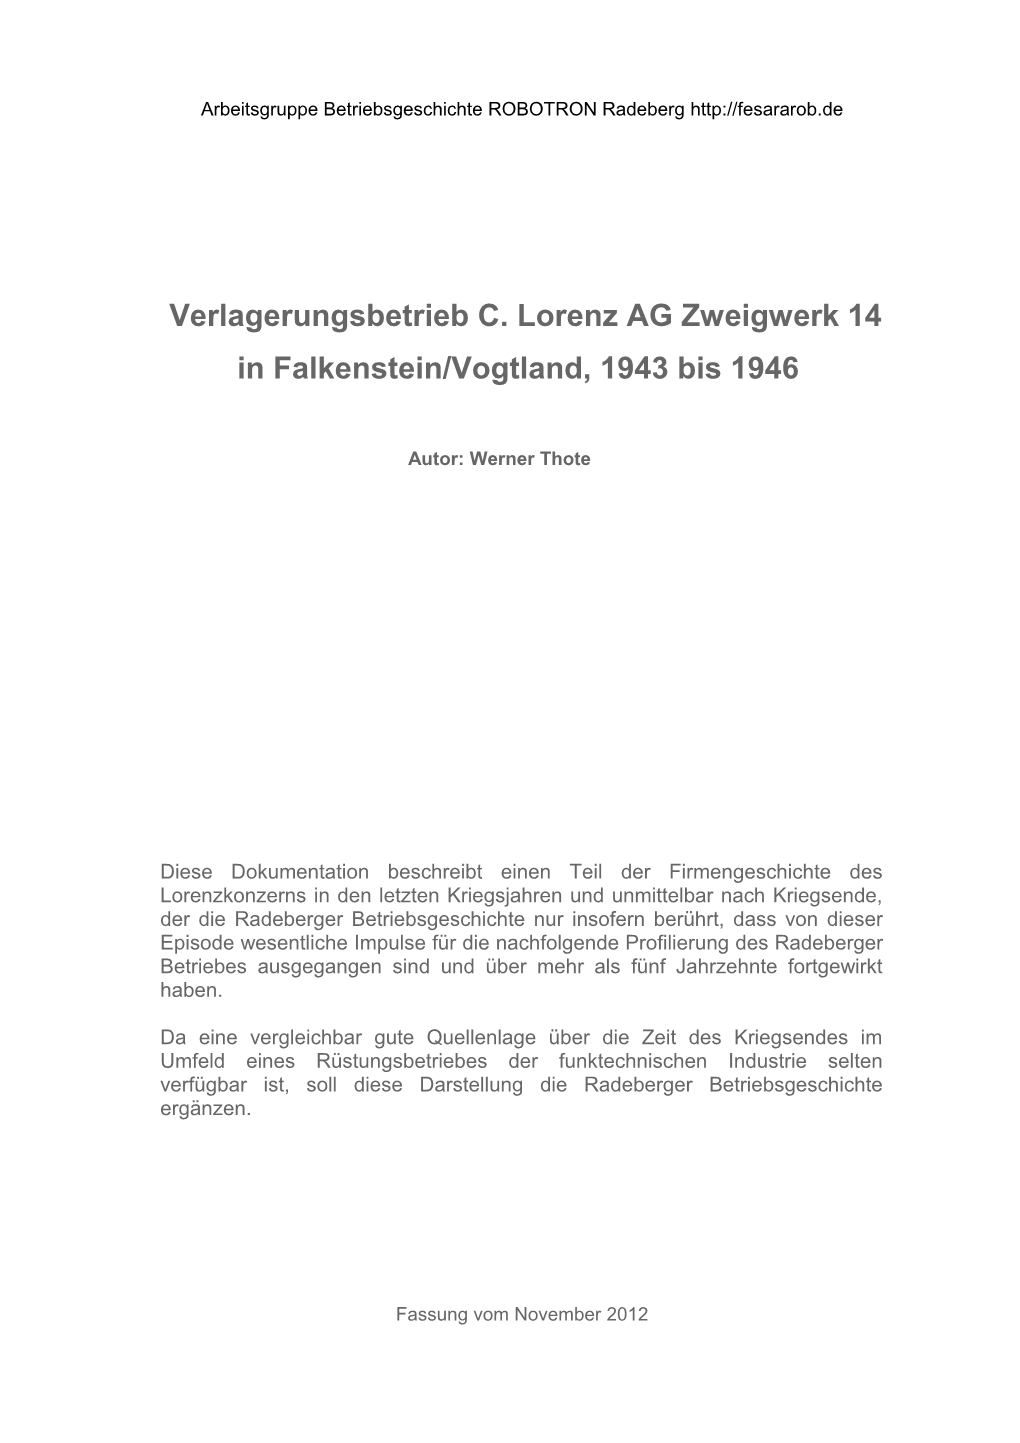 Verlagerungsbetrieb C. Lorenz AG Zweigwerk 14 in Falkenstein/Vogtland, 1943 Bis 1946